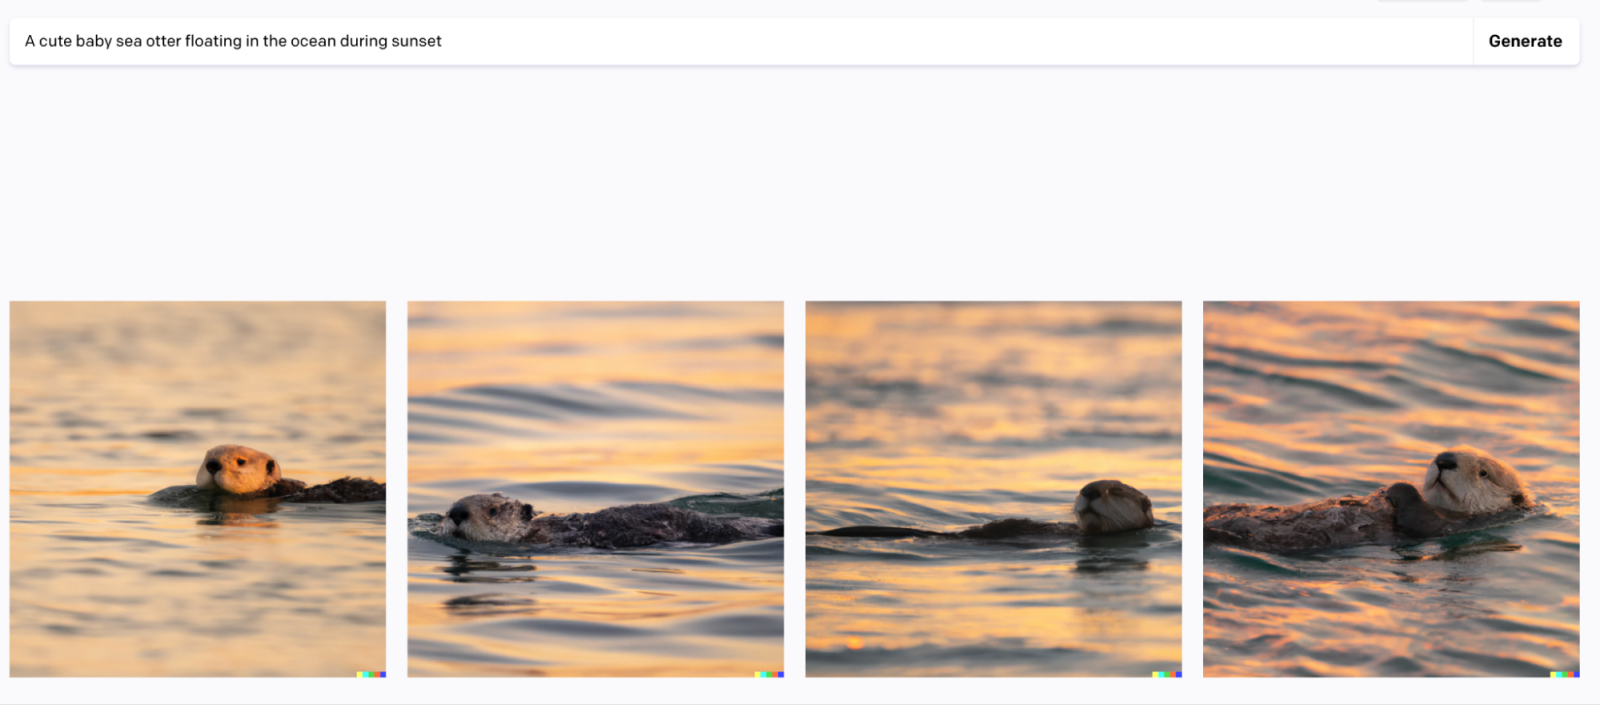 una linda cría de nutria marina flotando en el océano durante la puesta de sol